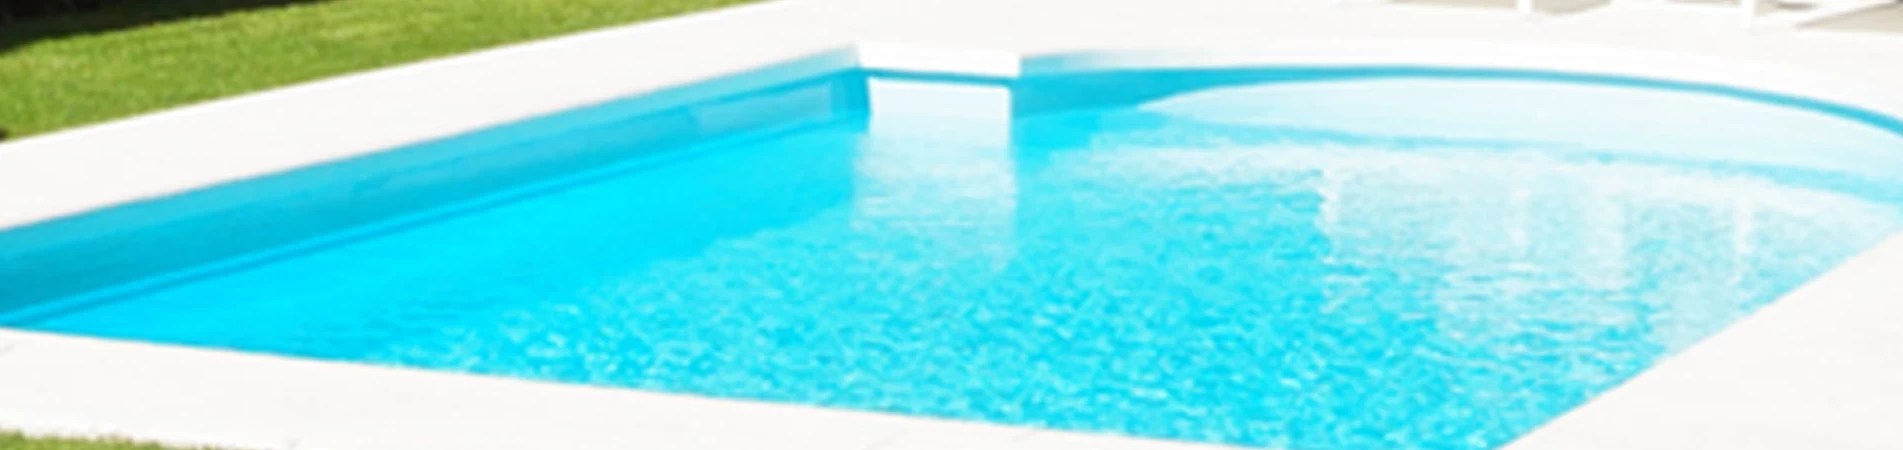 Importancia de medir y mantener niveles adecuados de pH del agua de la piscina